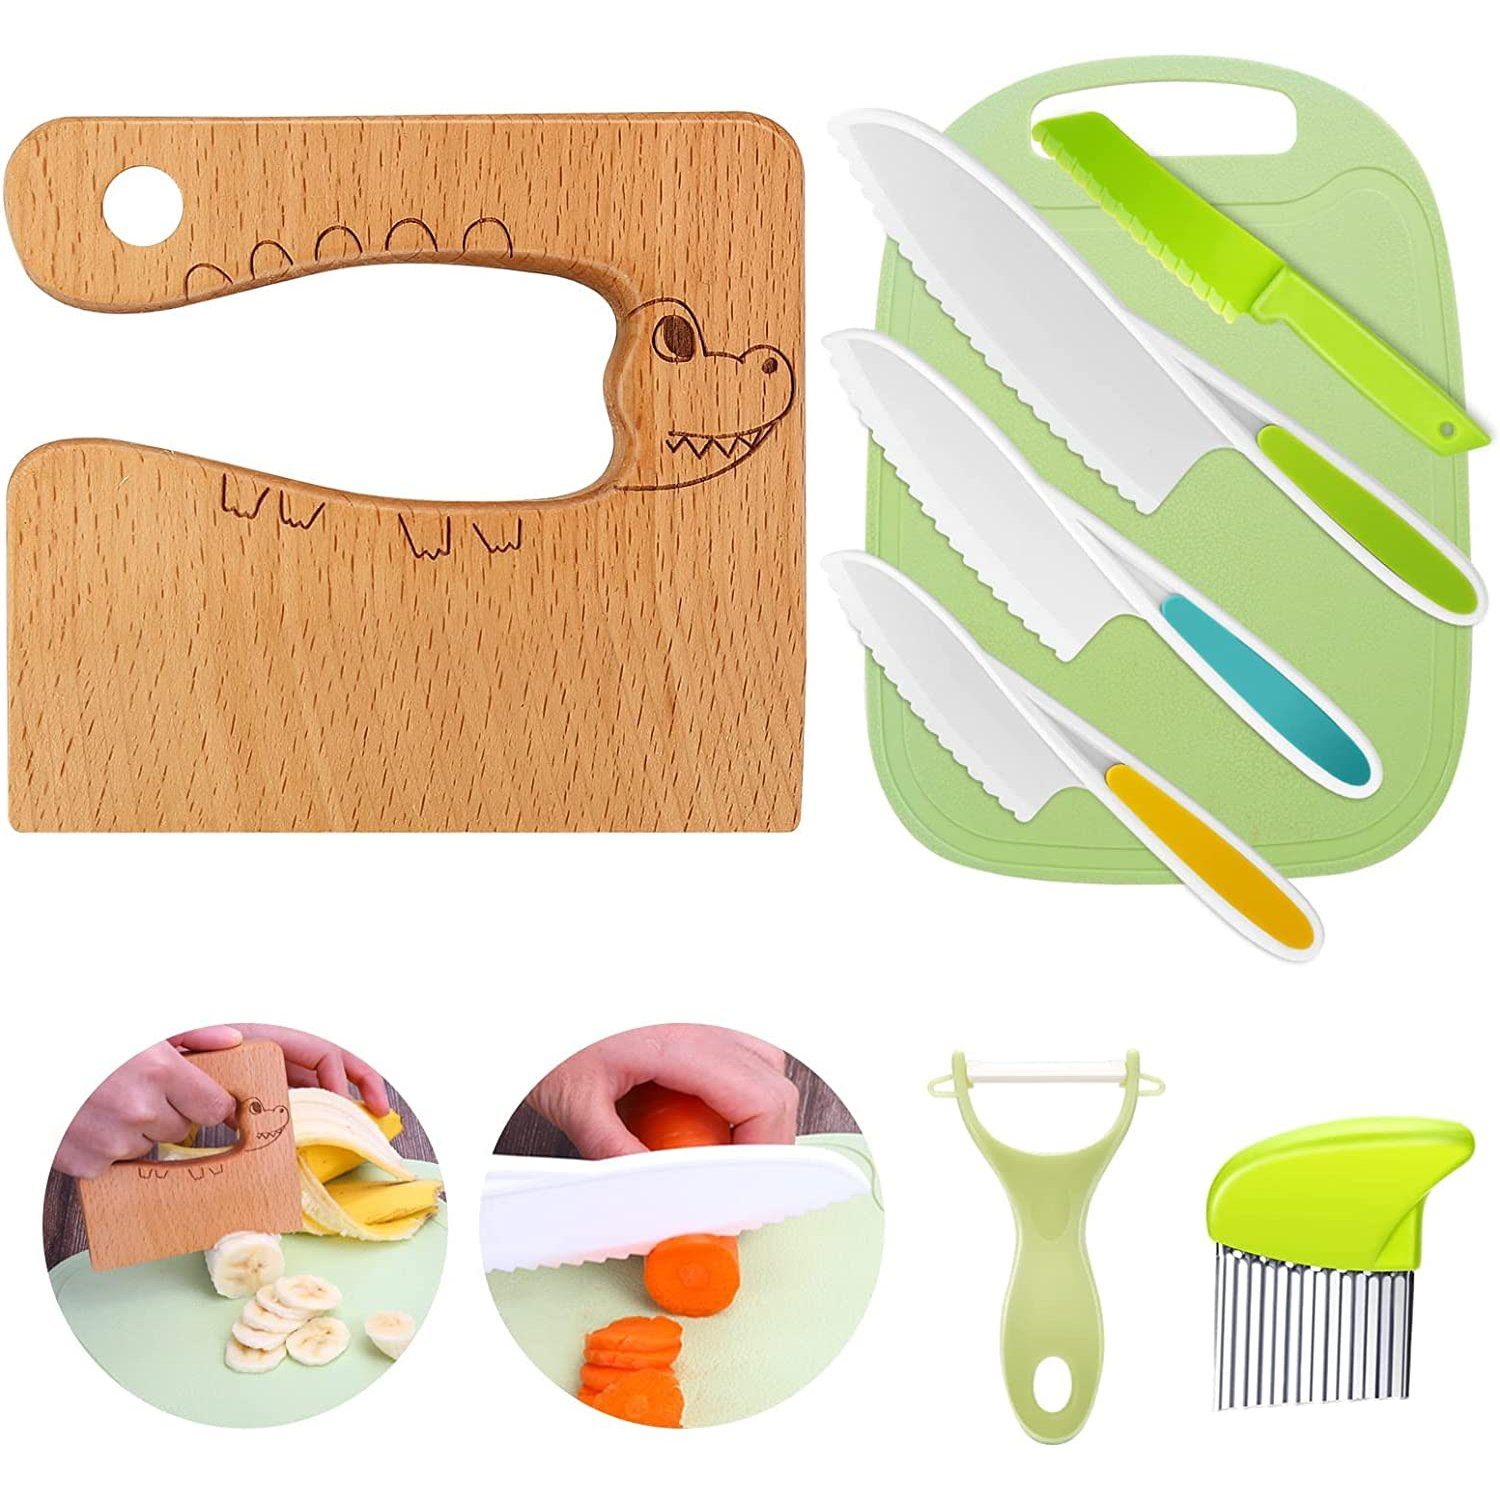 Küchenmesser-Set Kinder mit zggzerg Schäler und Holzmesser, Kinderkochmesser Schneidebrett